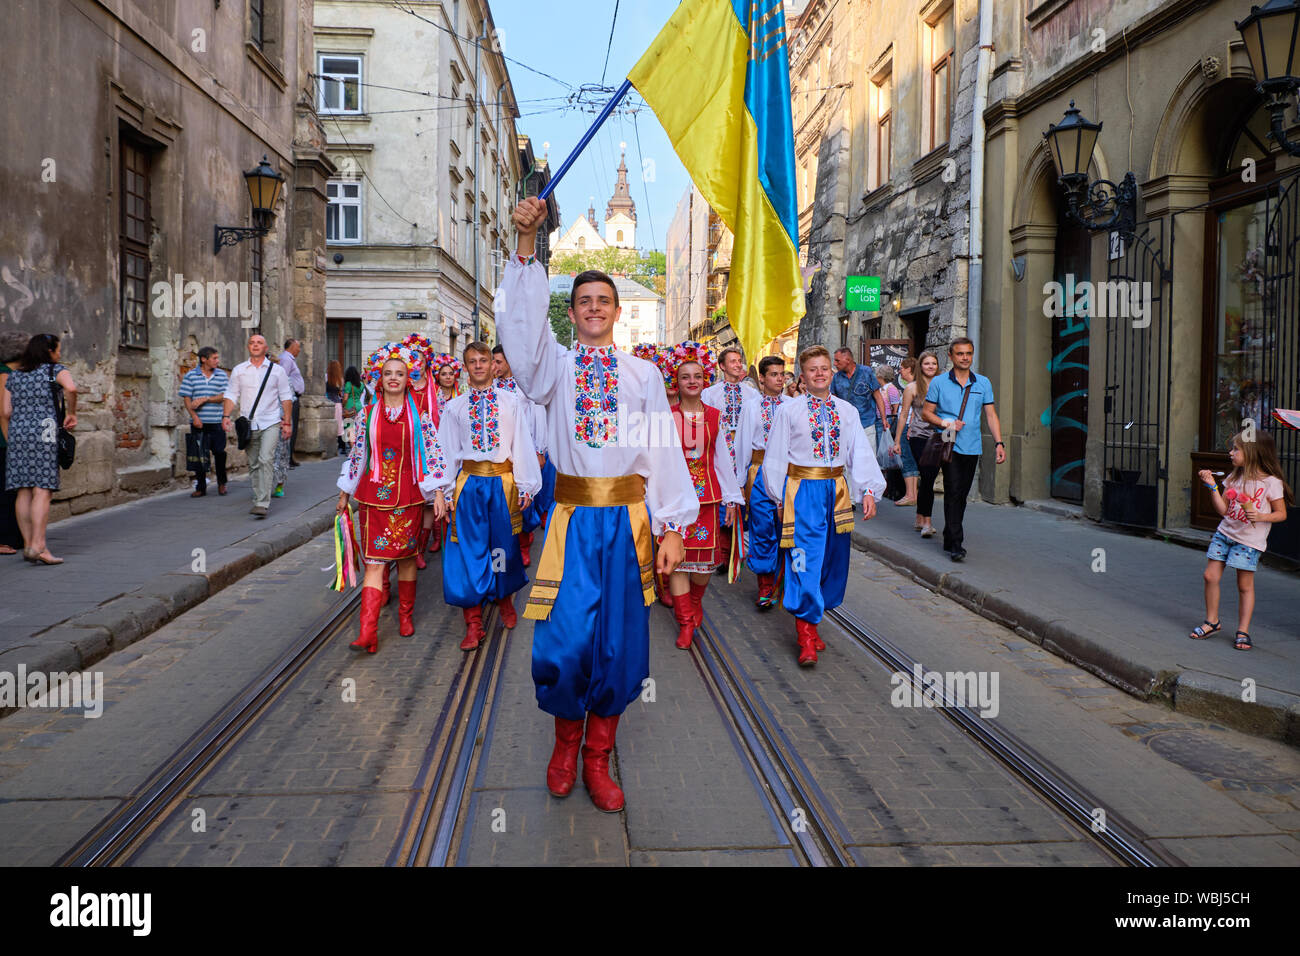 Die ukrainische Folklore Gruppe unter der Leitung von Fahnenträger zu Fuß durch die Straßen während der Parade der Etnovyr Festival in der Straße von Lviv, Ukraine Stockfoto